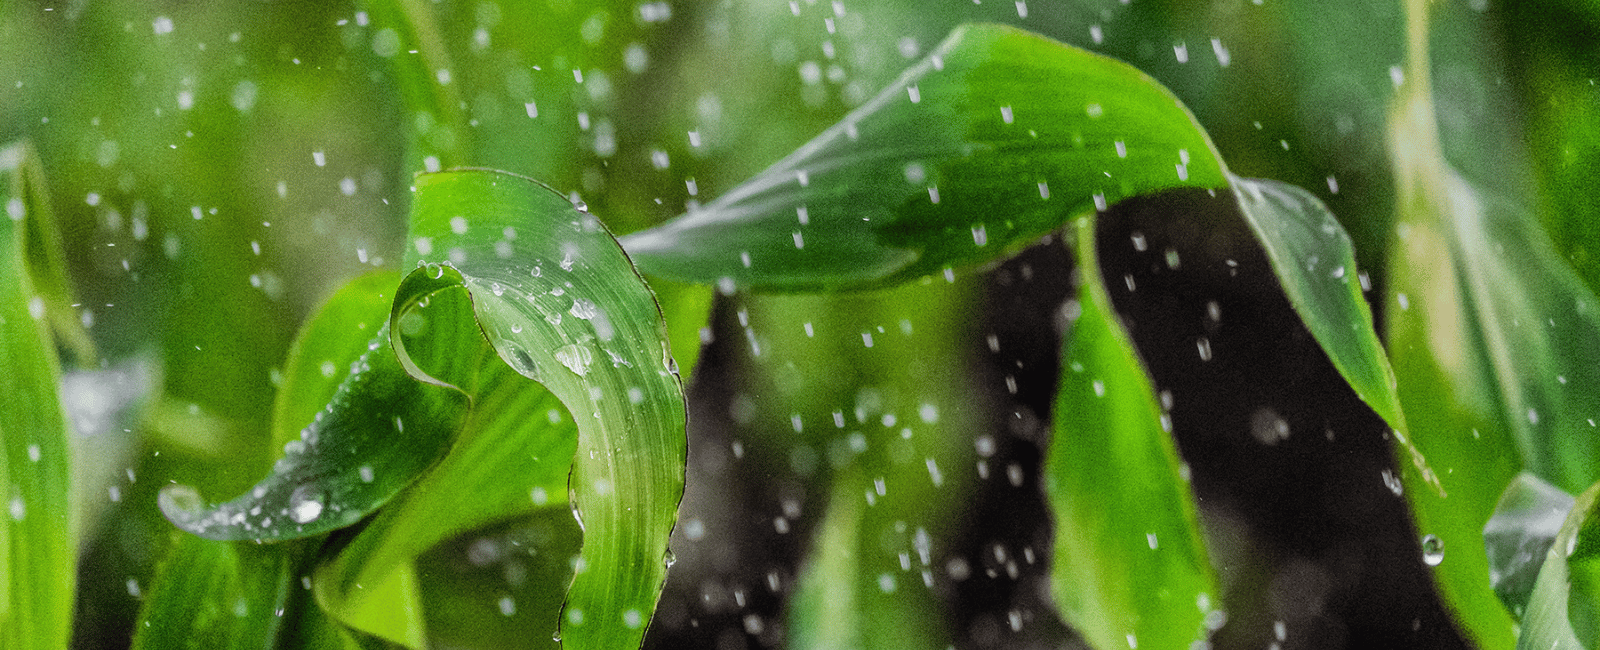 water falls on sorghum leaves